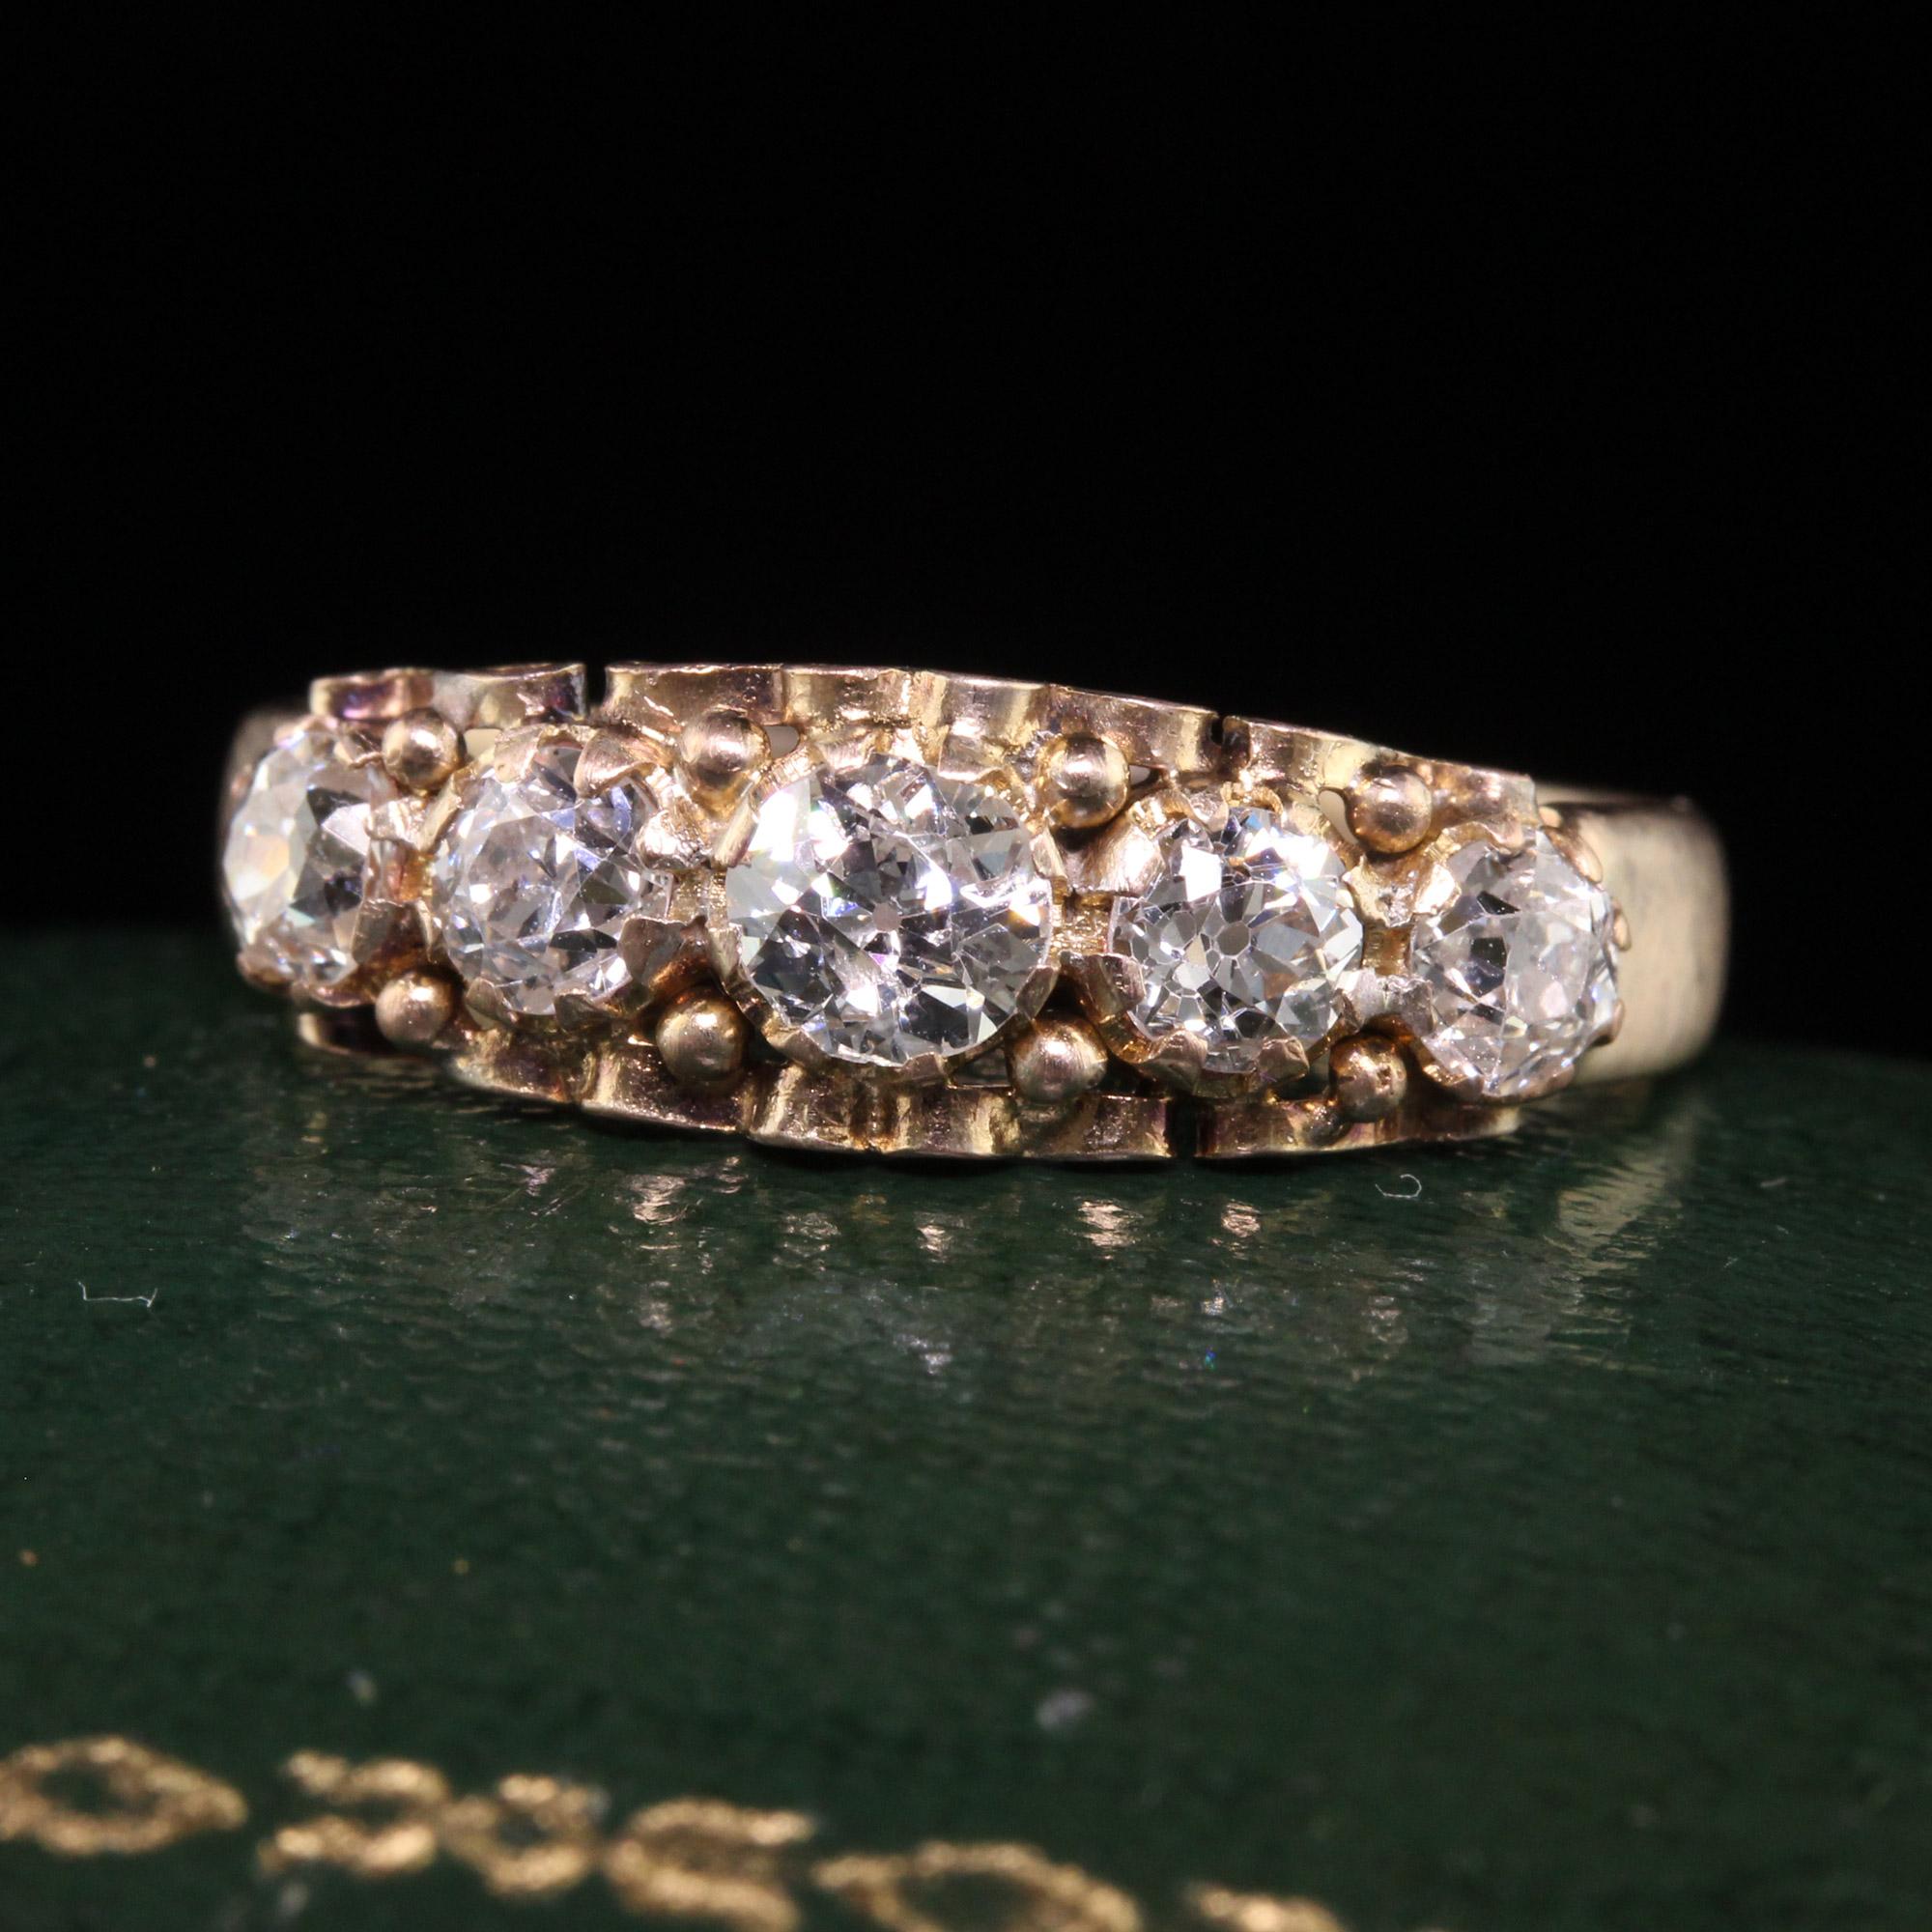 Magnifique bracelet victorien ancien en or jaune 15K avec cinq pierres en diamant de taille européenne. Ce magnifique bracelet est réalisé en or jaune 15k. La bague comporte cinq diamants de taille européenne ancienne sertis dans une magnifique